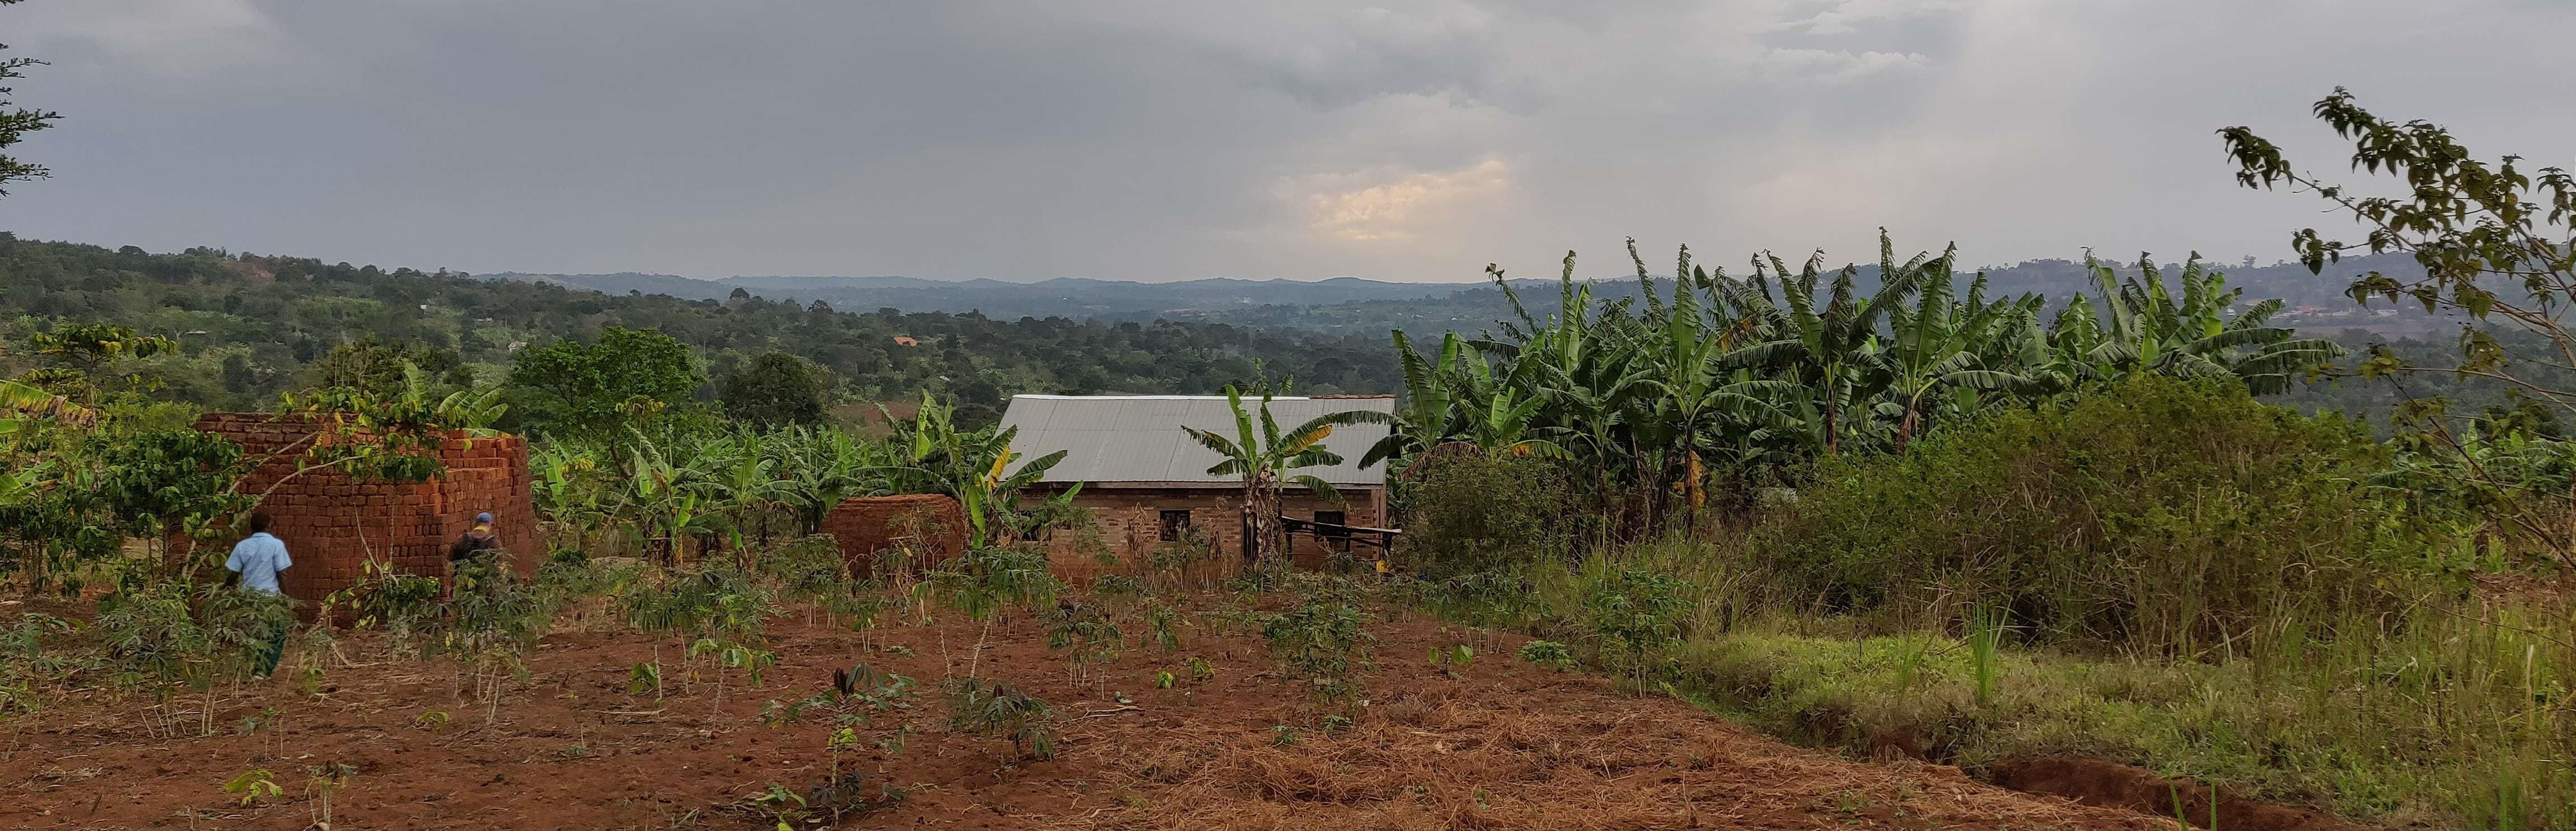 Reportage "Uganda: Farmschulen"; Foto:  Gebäude, dahinter Blick auf die Landschaft, im Vordergrund landwirtschaftlich genutzte Fläche  (Quelle: Katharina Drzsiga / Kindernothilfe)